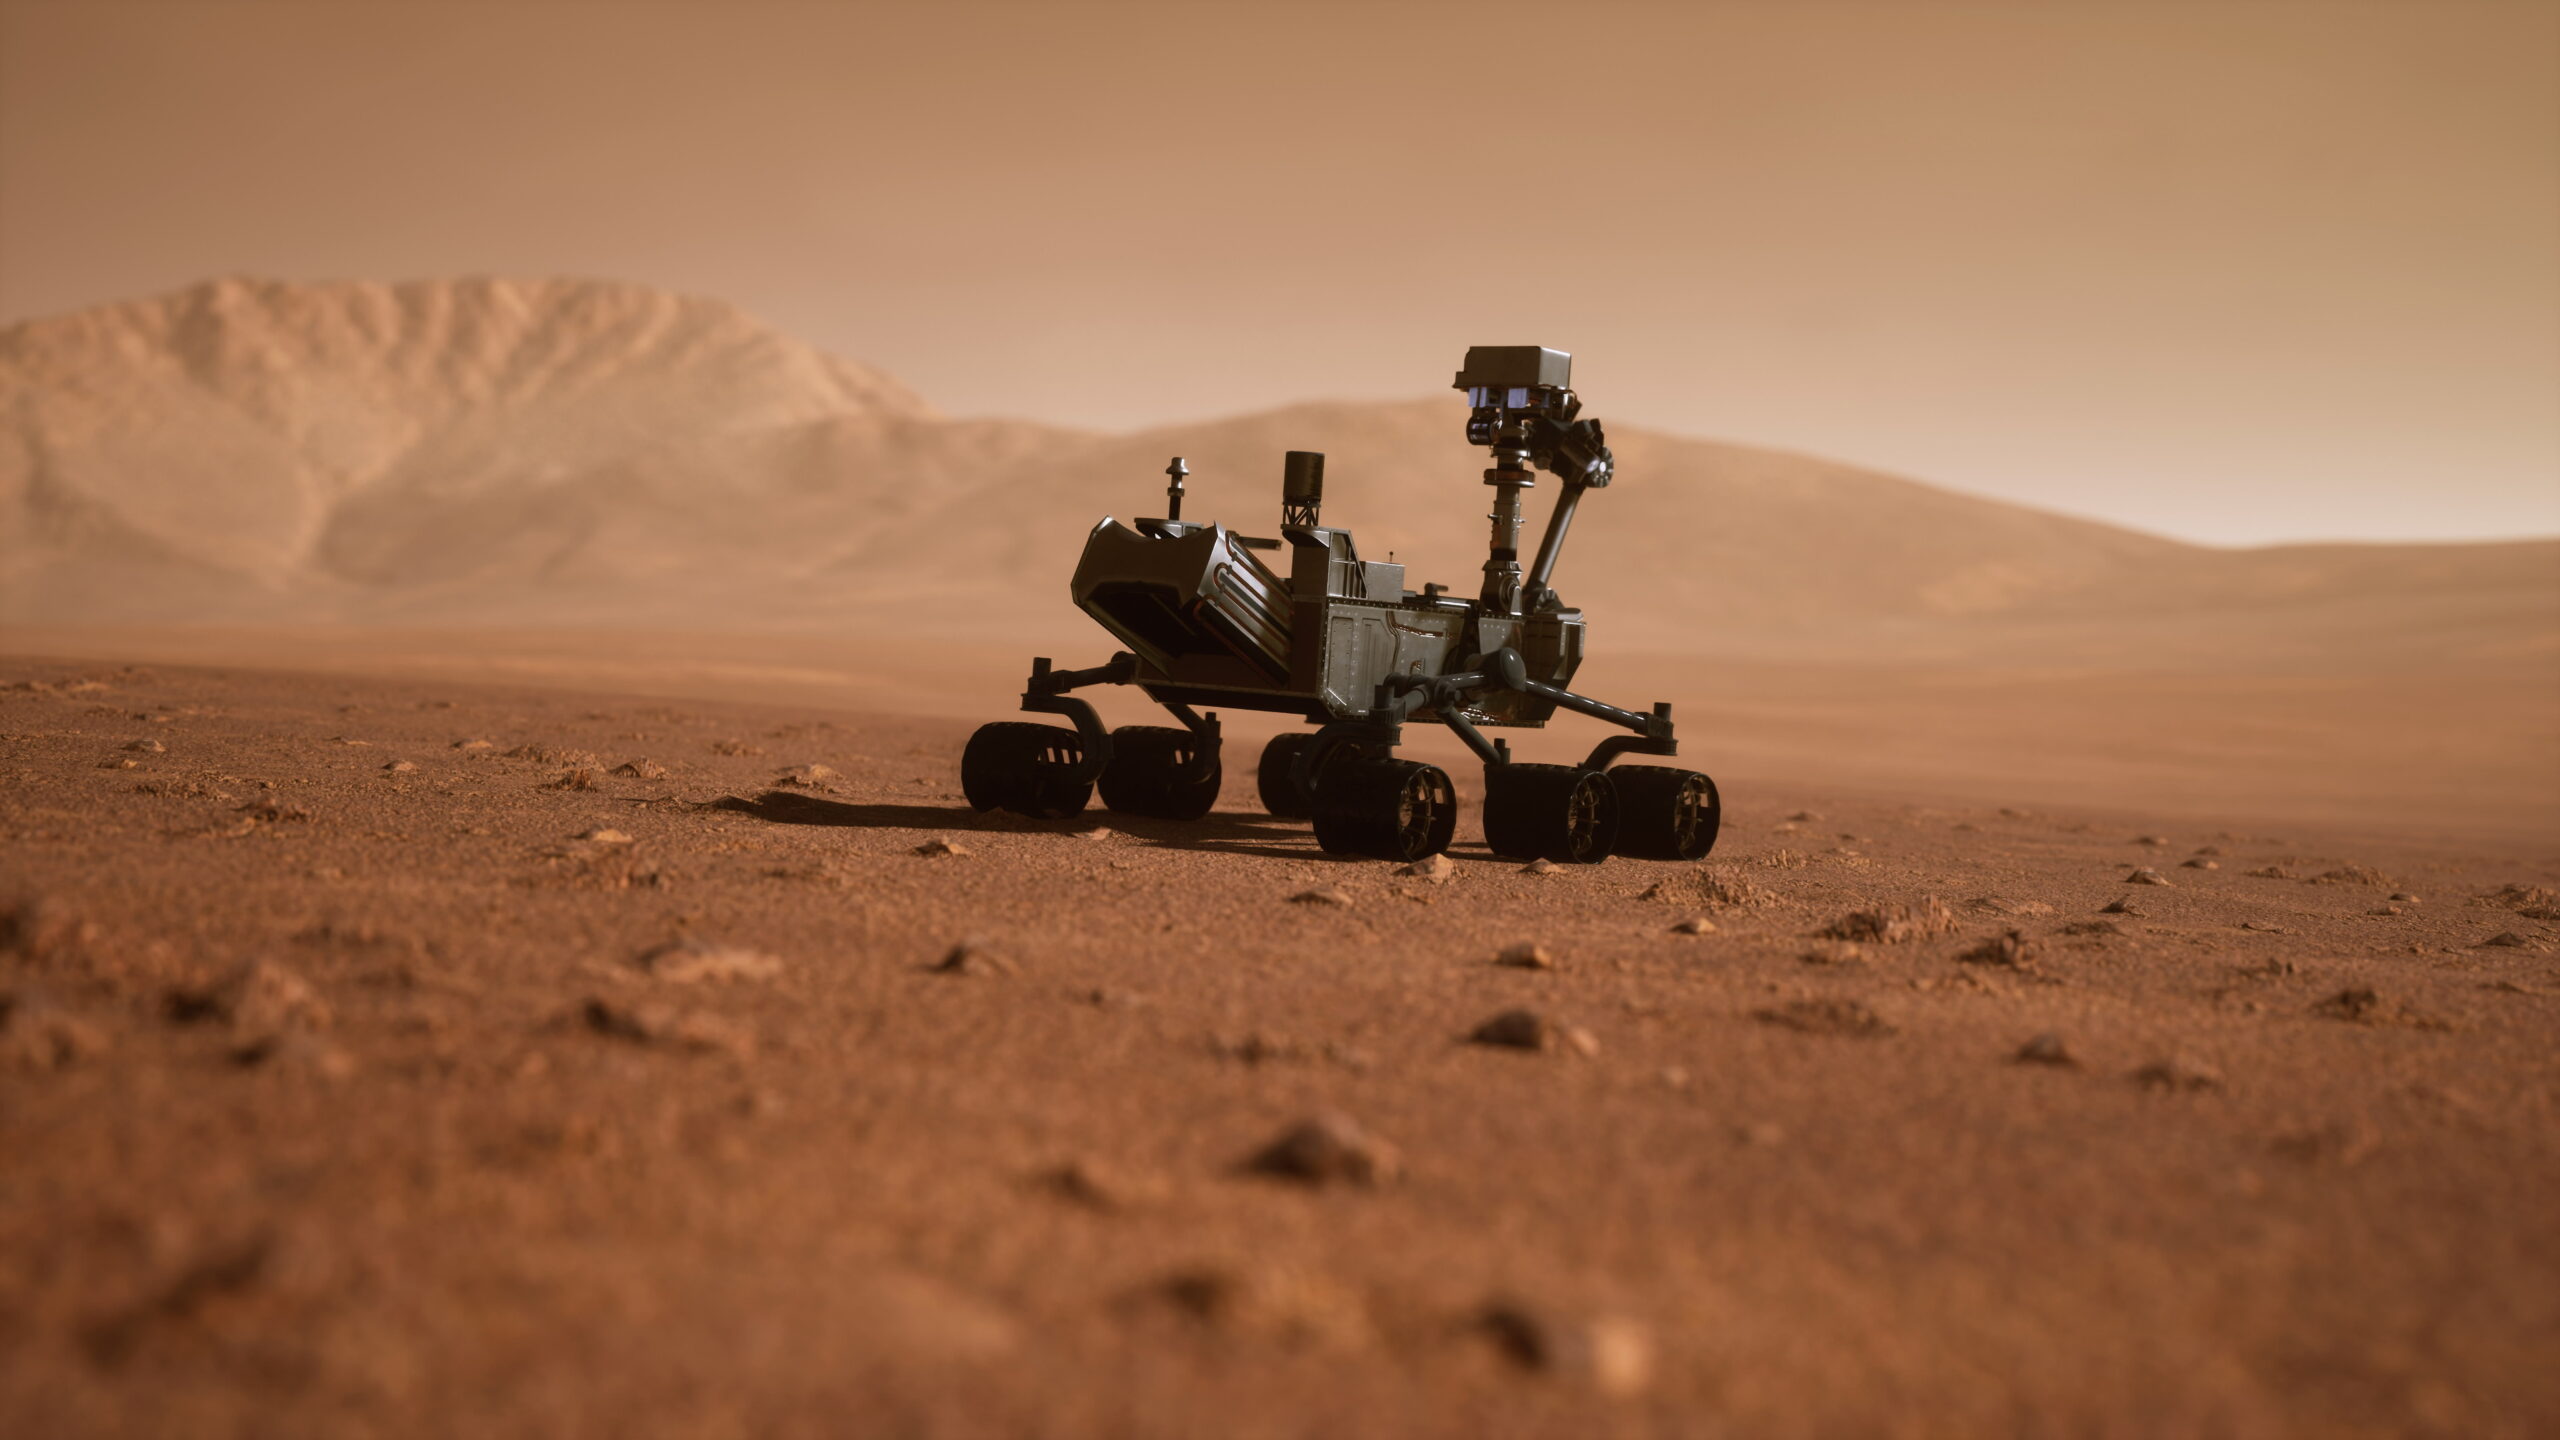 Foto eines Roboters in der Wüste